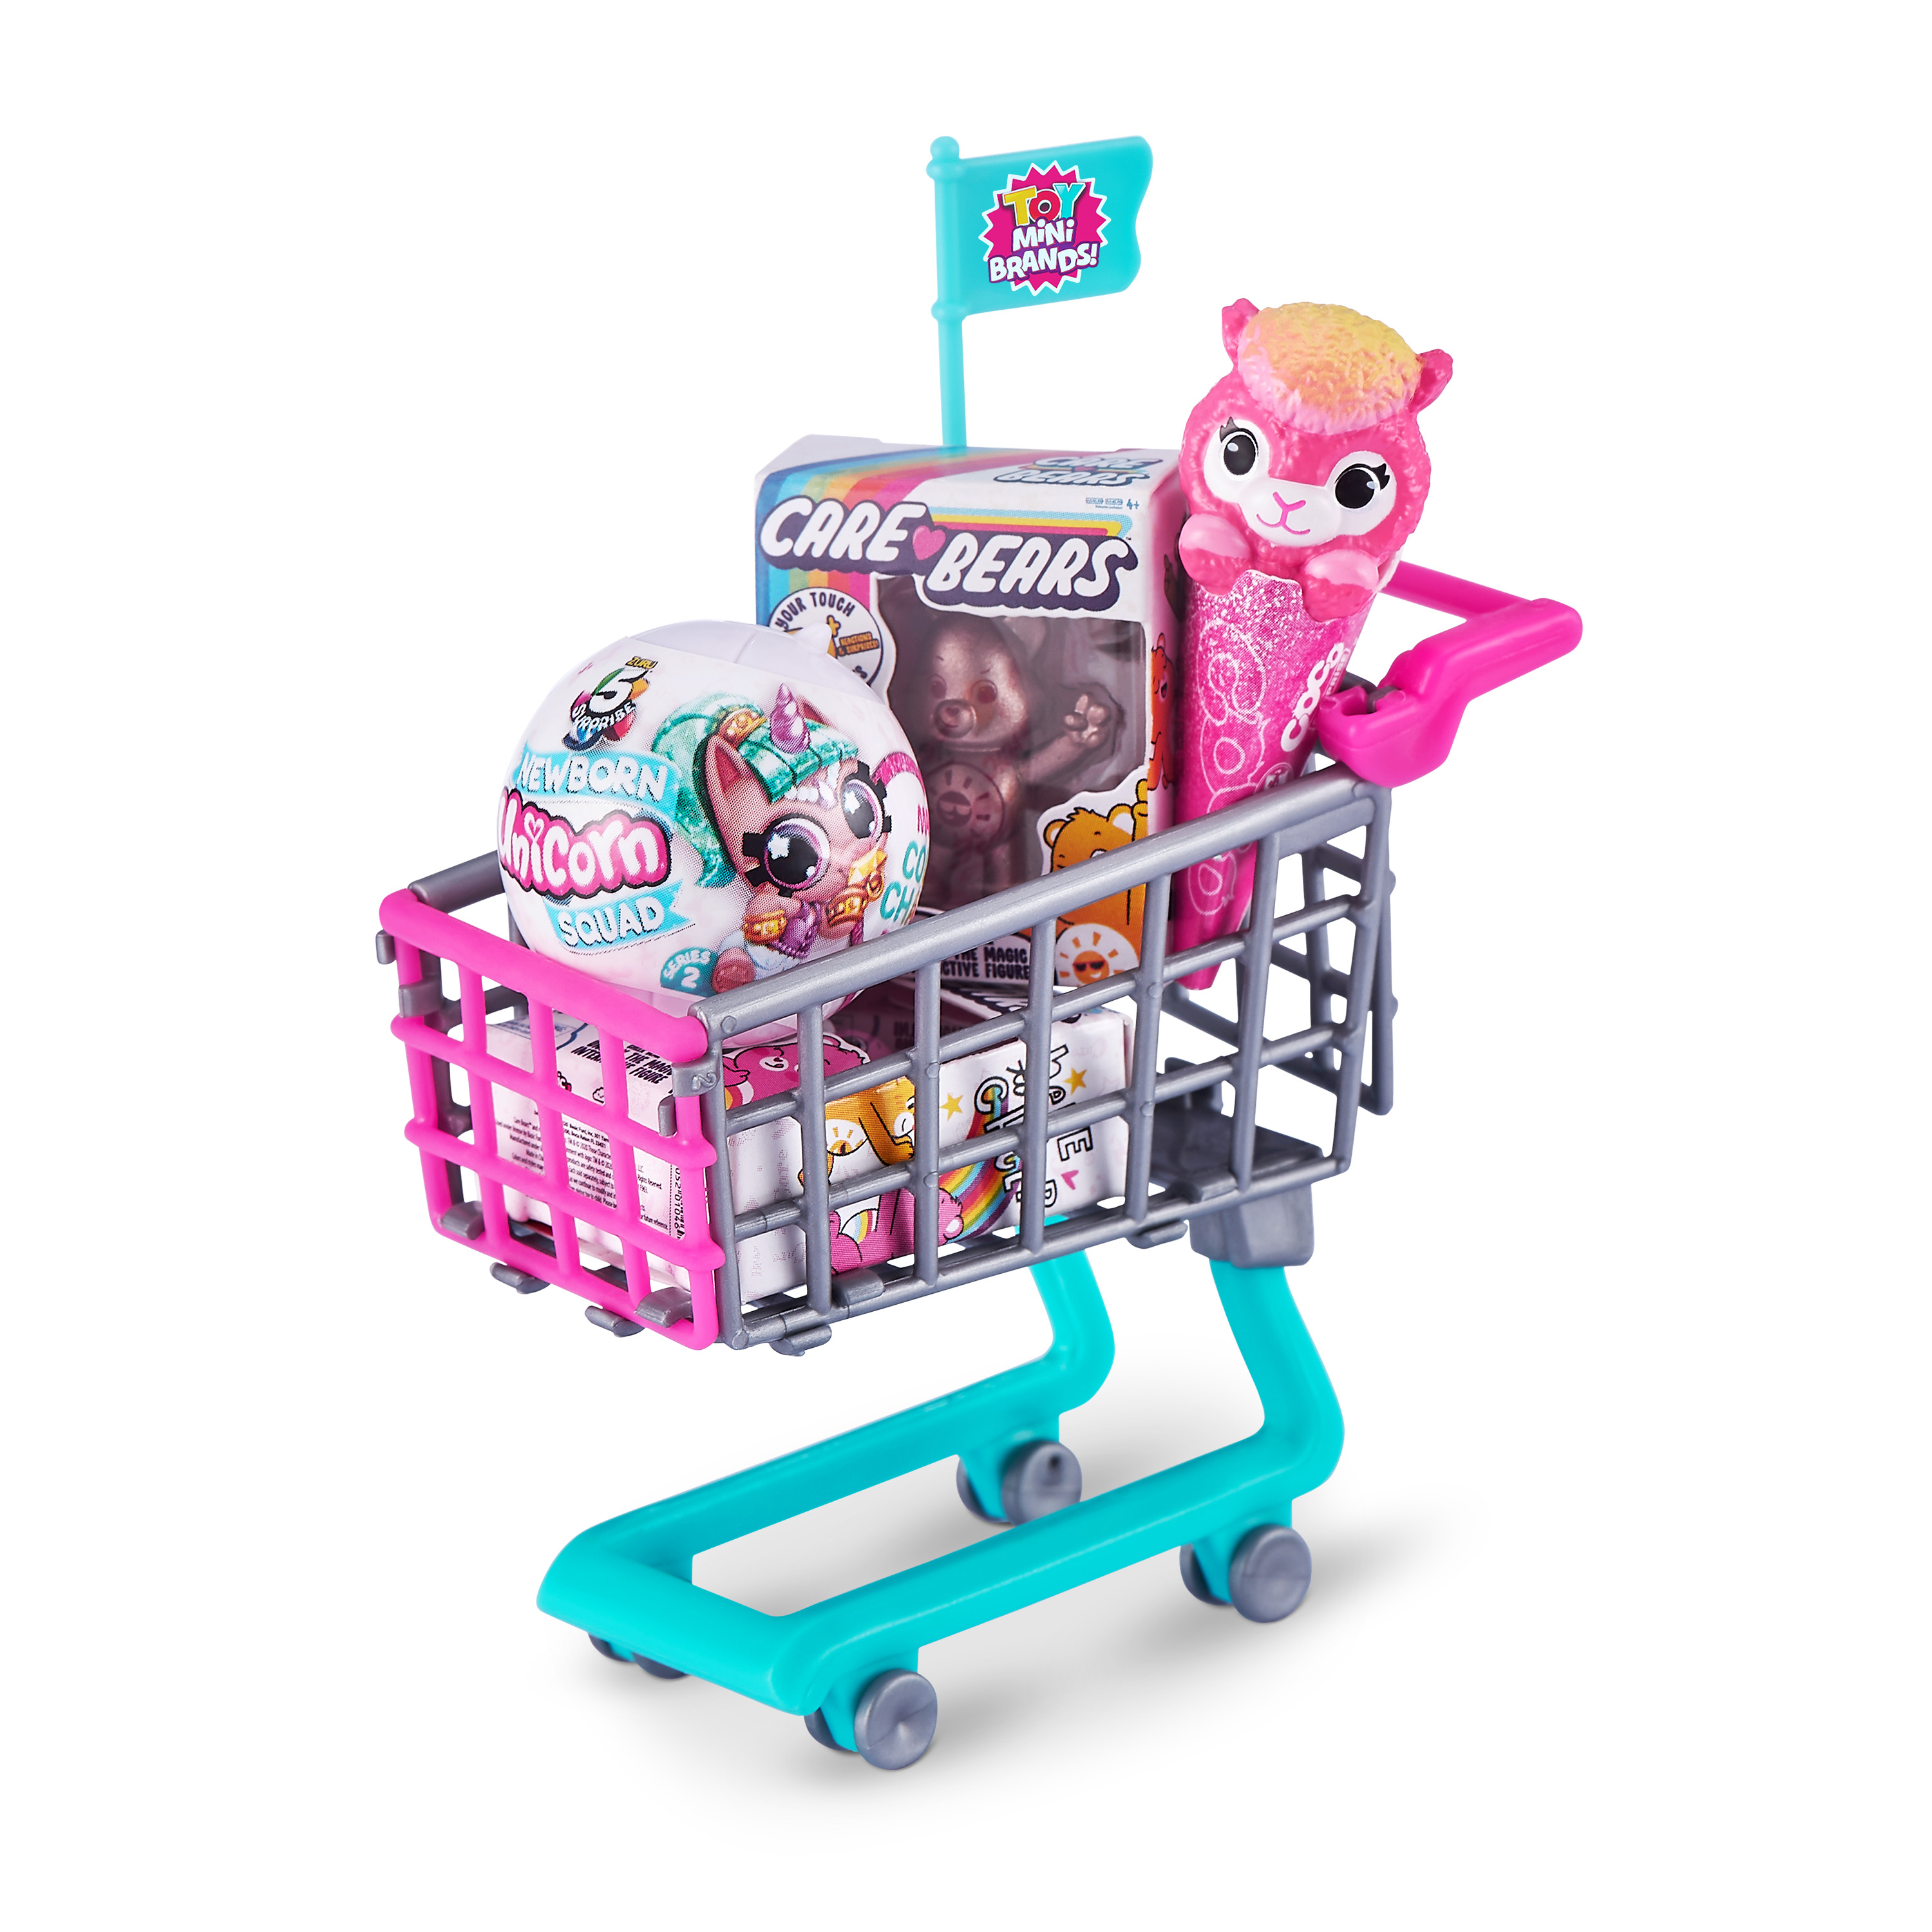 Игрушка Zuru 5 surprise Toy Mini brands S2 Шар в непрозрачной упаковке (Сюрприз) 77220GQ1 - фото 6